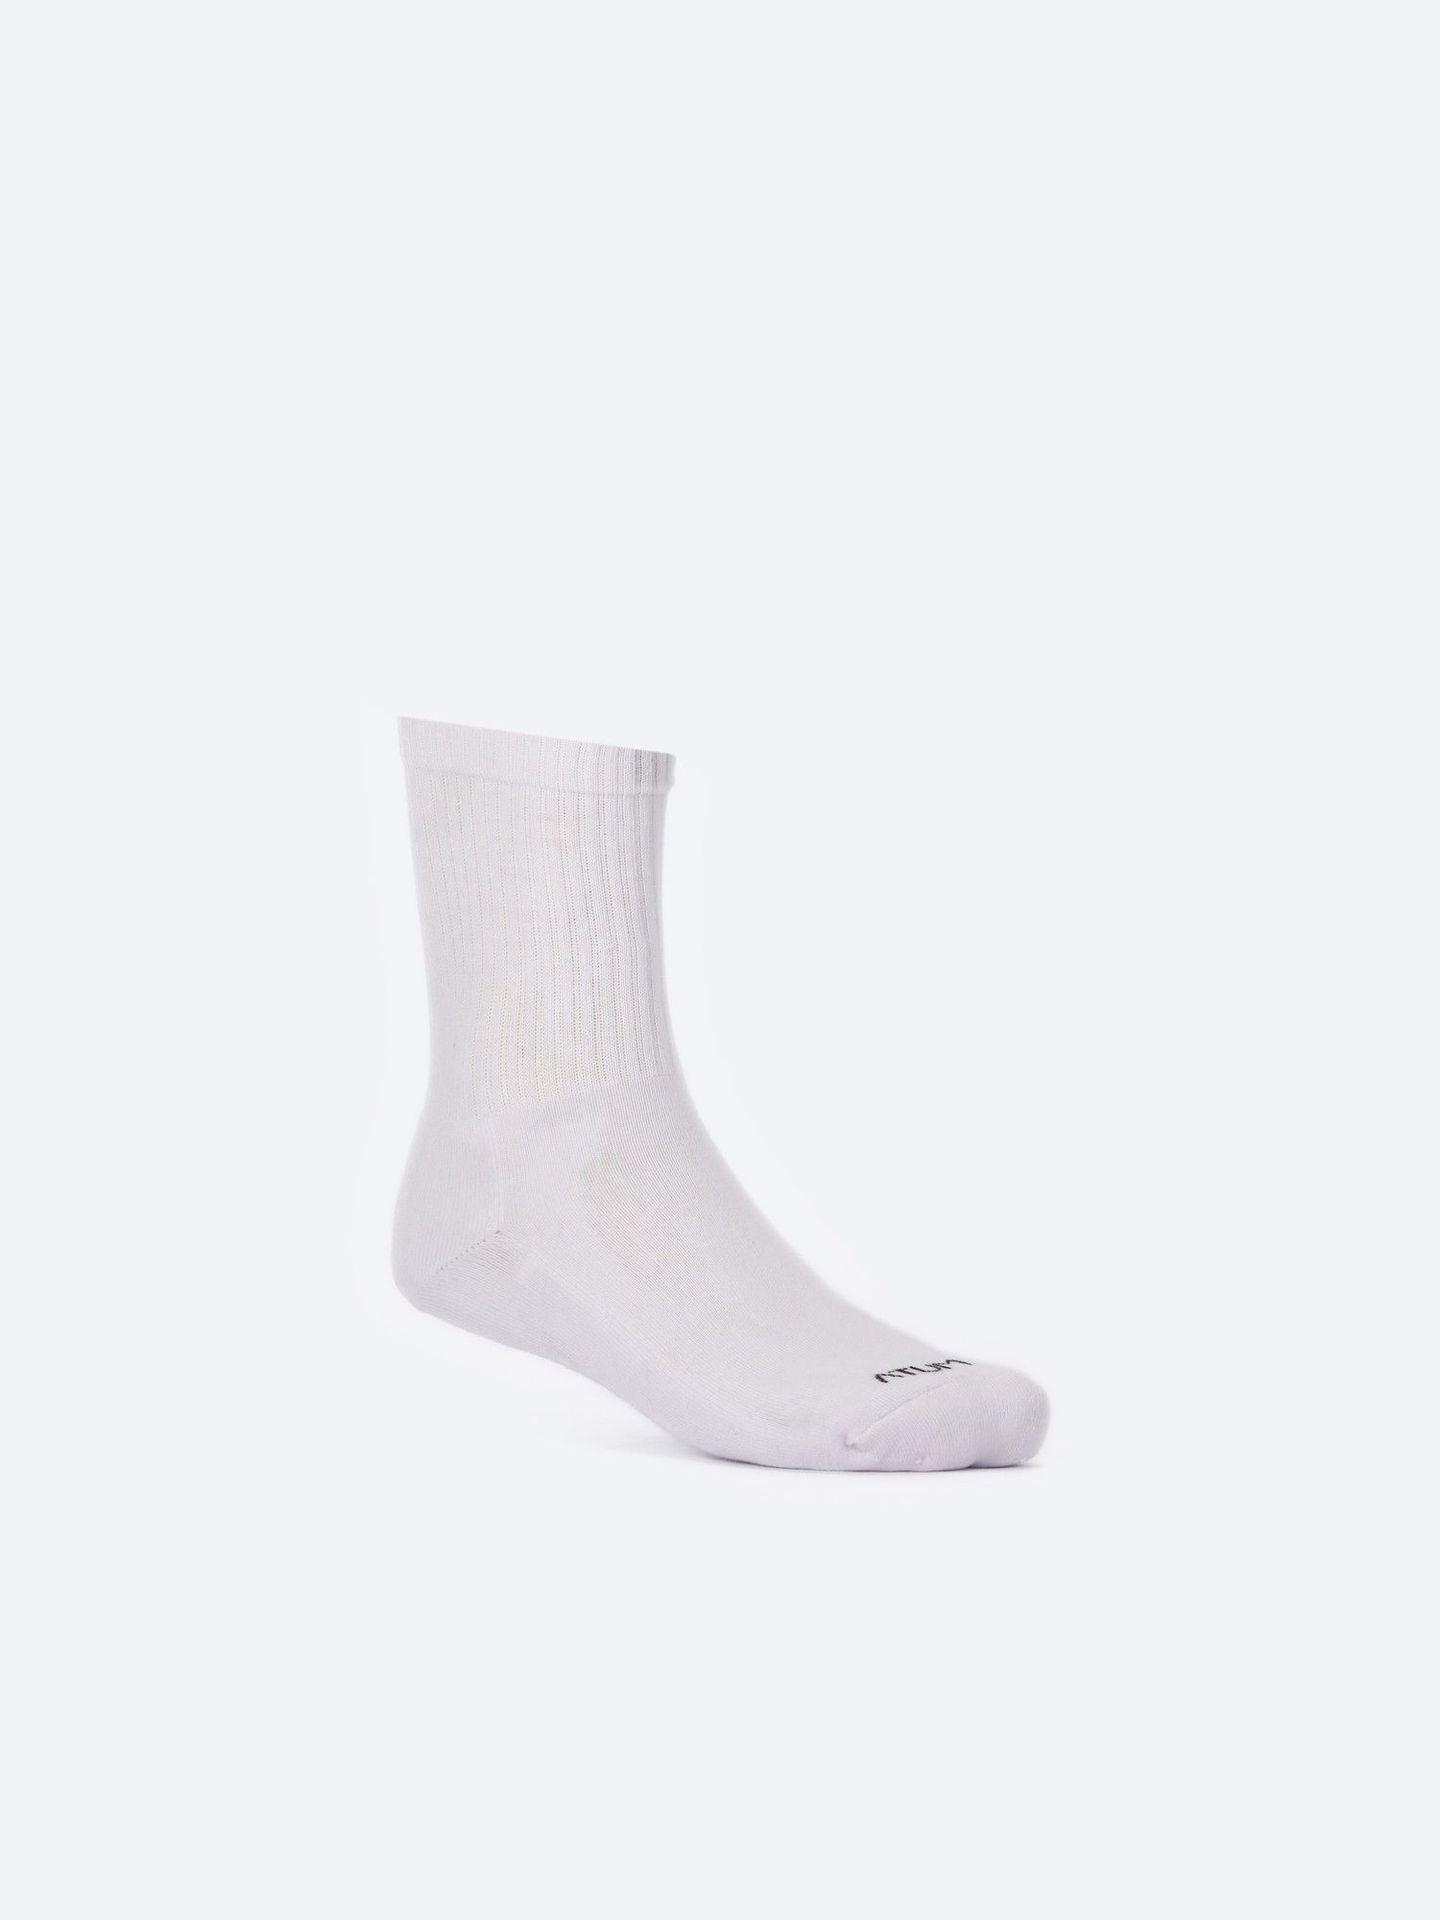 Photo by ð—”ð—§ð—¨ð— SPORTSWEAR Â® on December 26, 2022. May be kid's white mid-crew training socks with atum logo